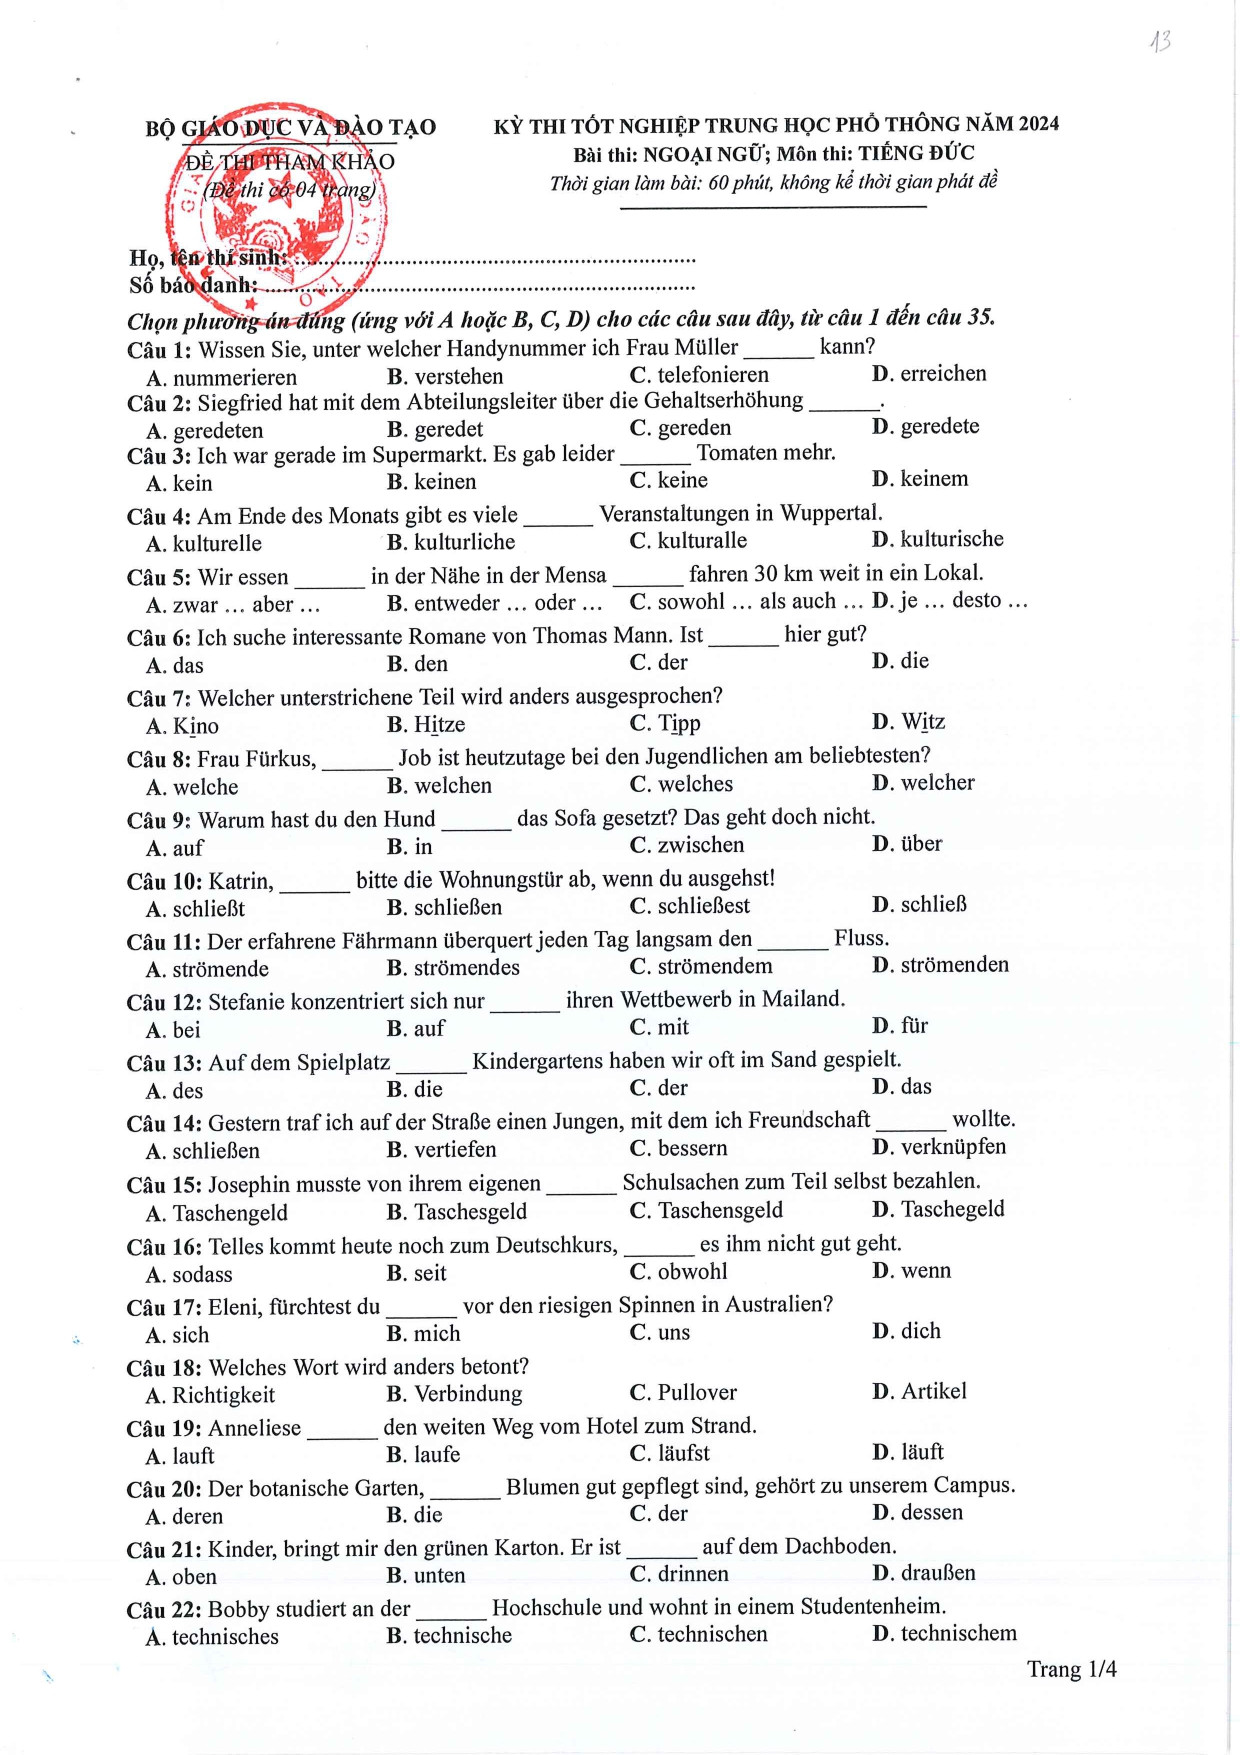 Đề tham khảo tốt nghiệp THPT môn Tiếng Đức năm 2024 (có đáp án chi tiết) (ảnh 1)